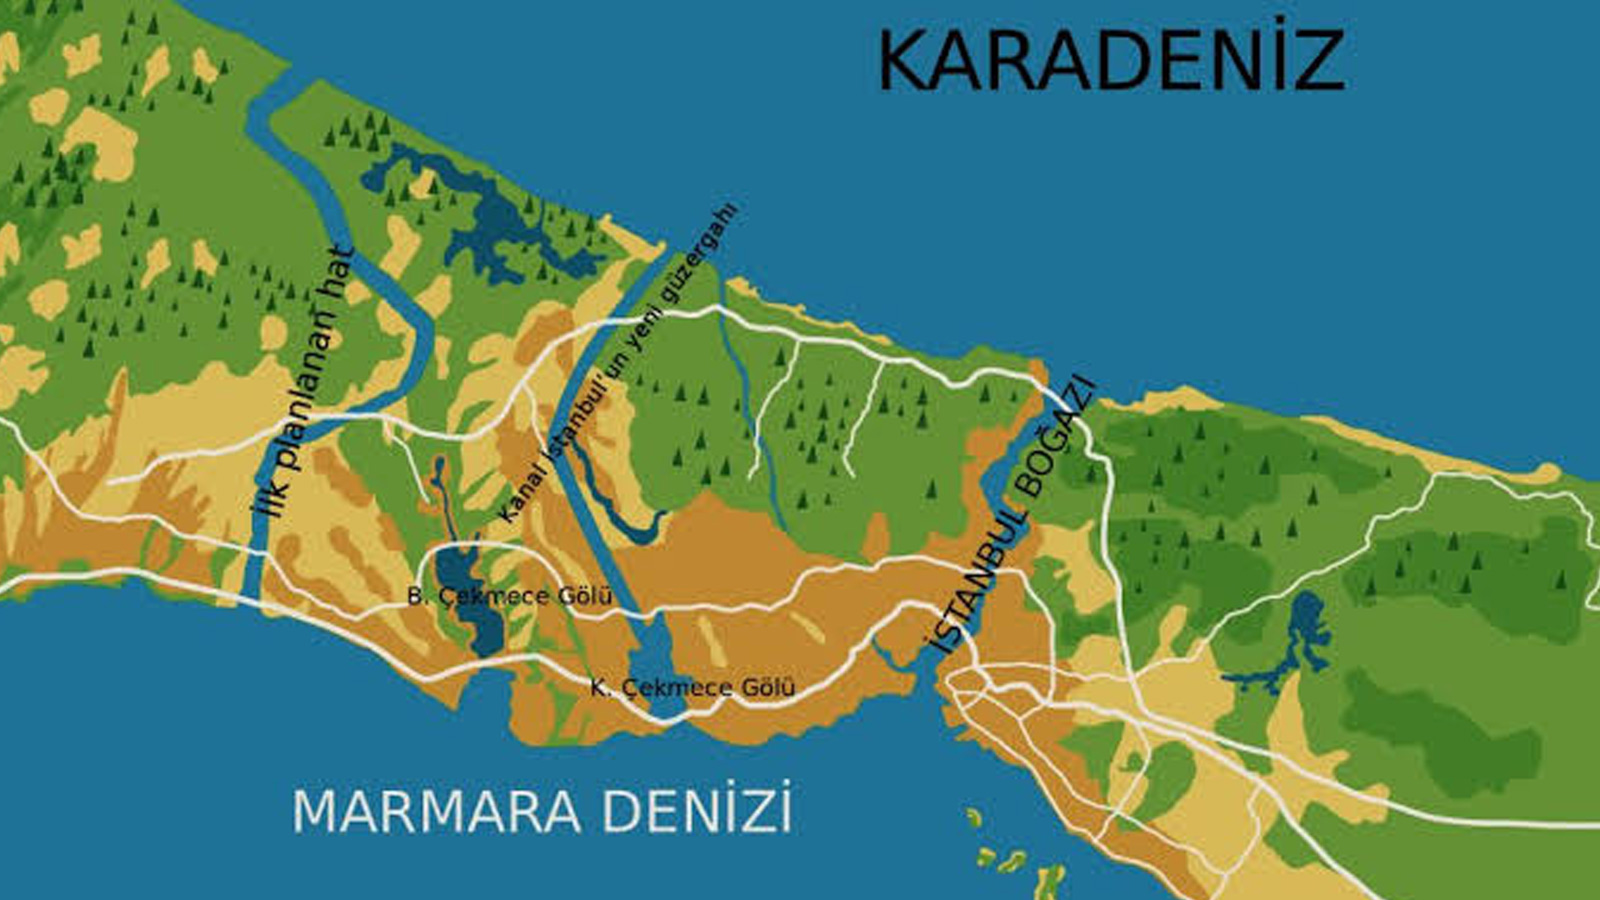 Kanal İstanbul'a itiraz için son gün